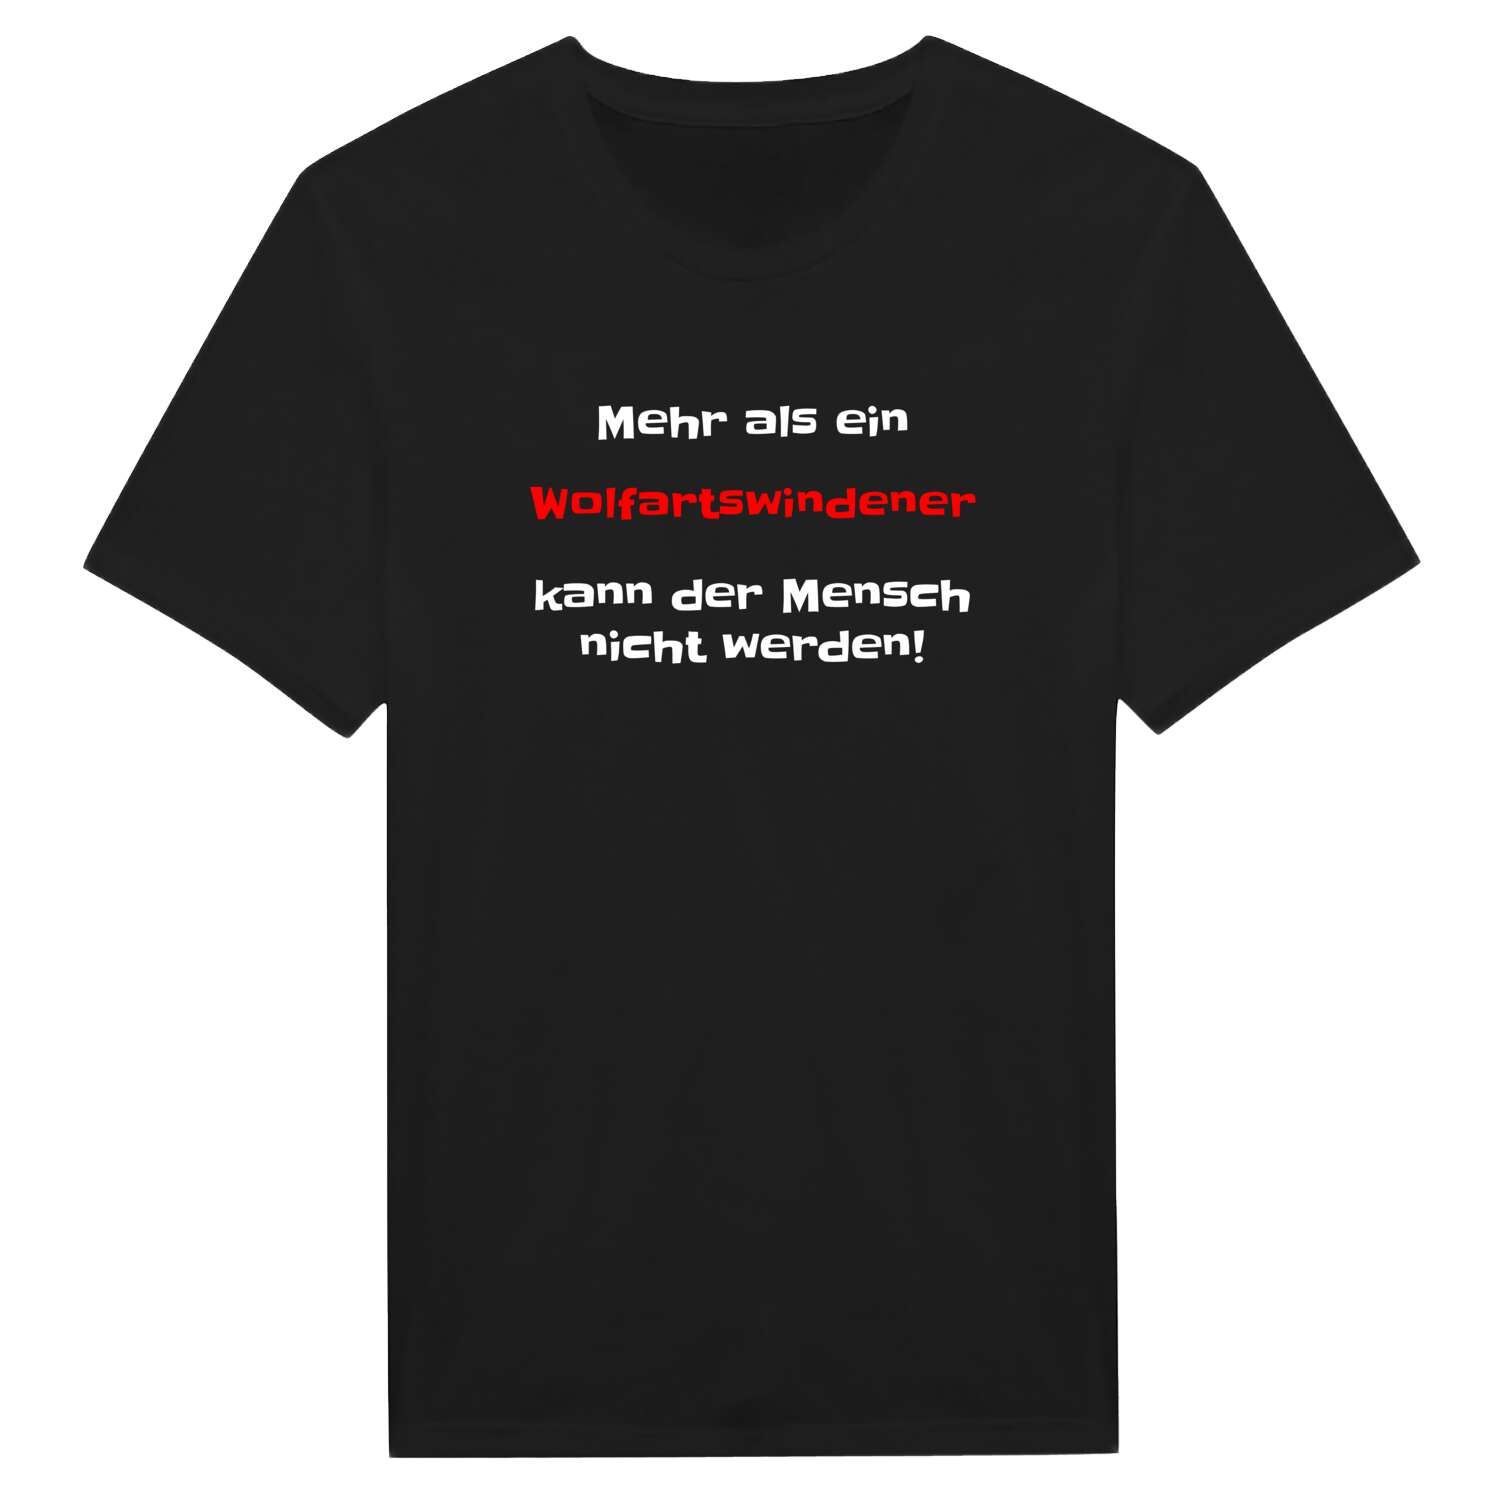 Wolfartswinden T-Shirt »Mehr als ein«